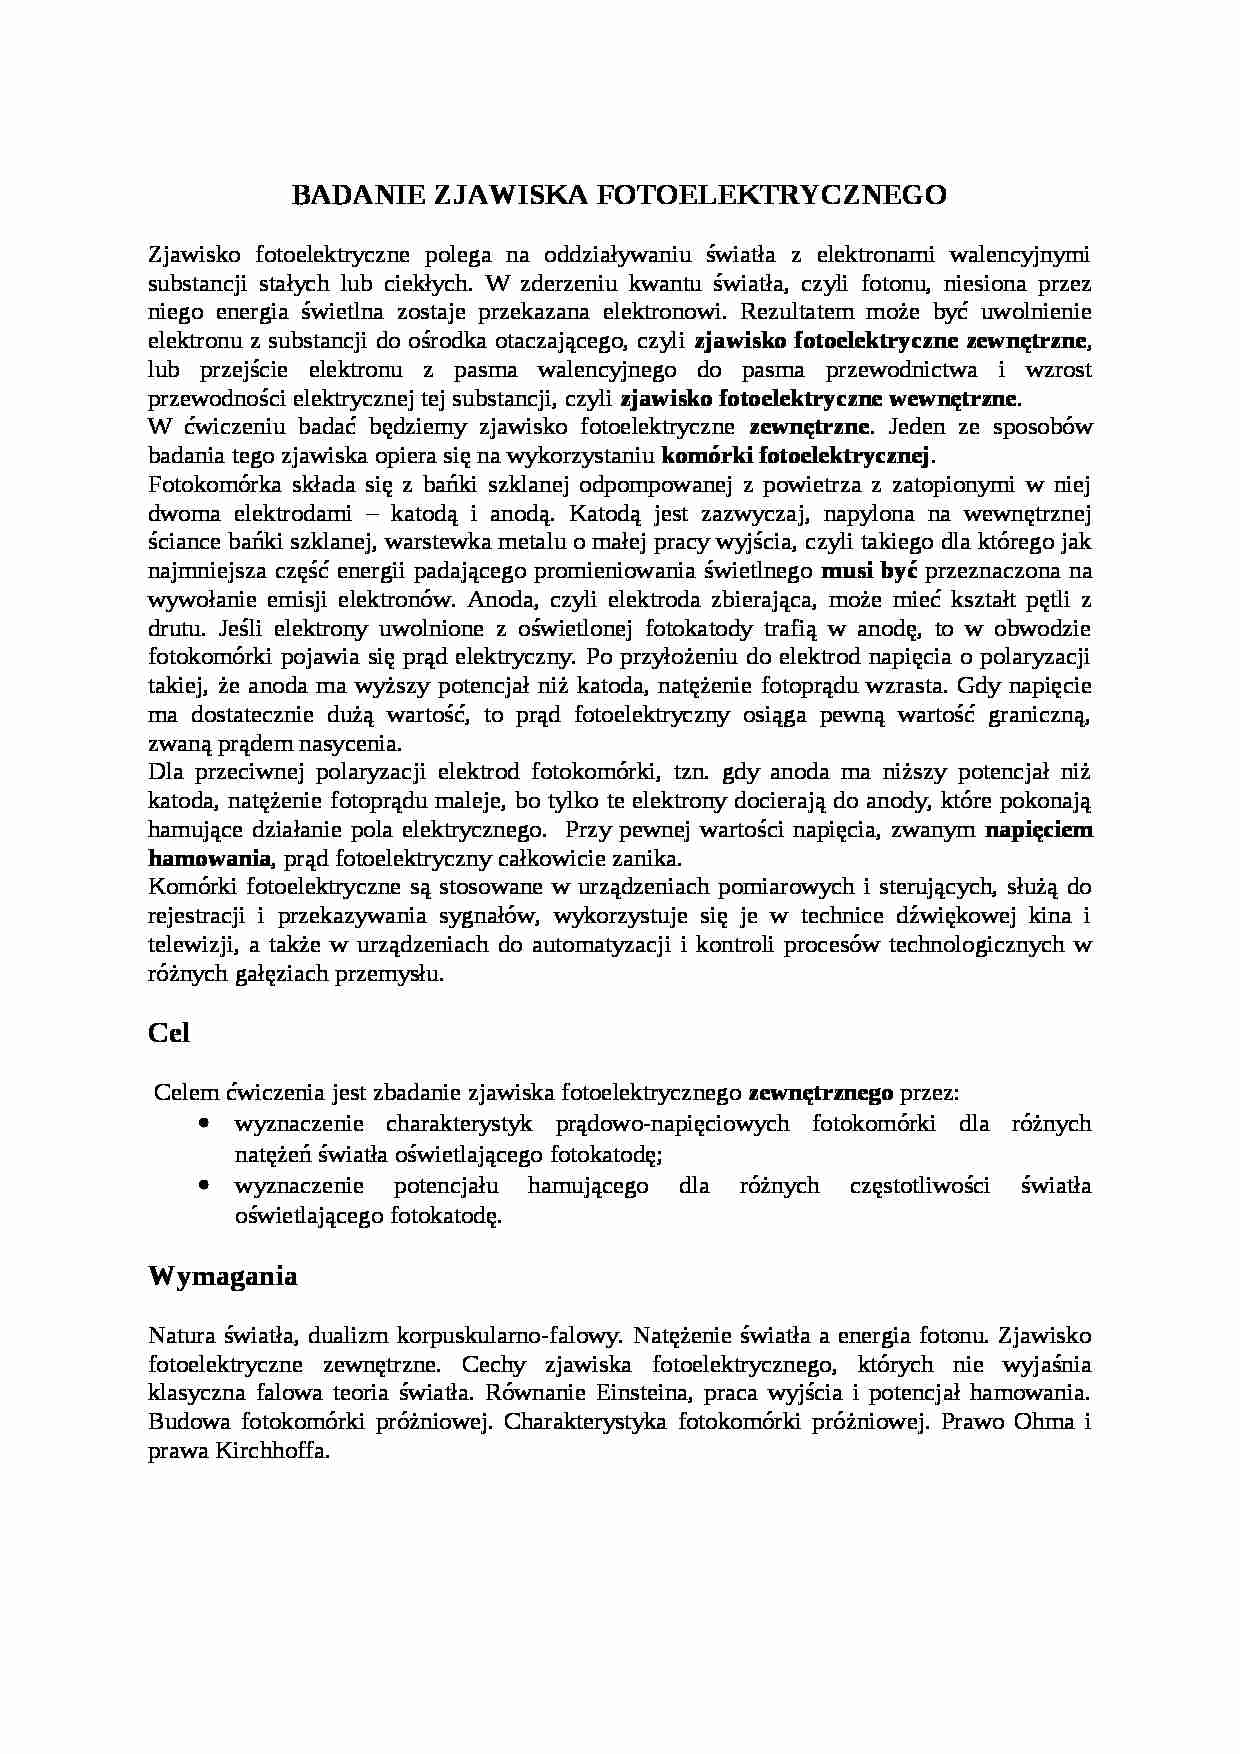 Badanie Zjawiska fotoelektrycznego-opracowanie - strona 1